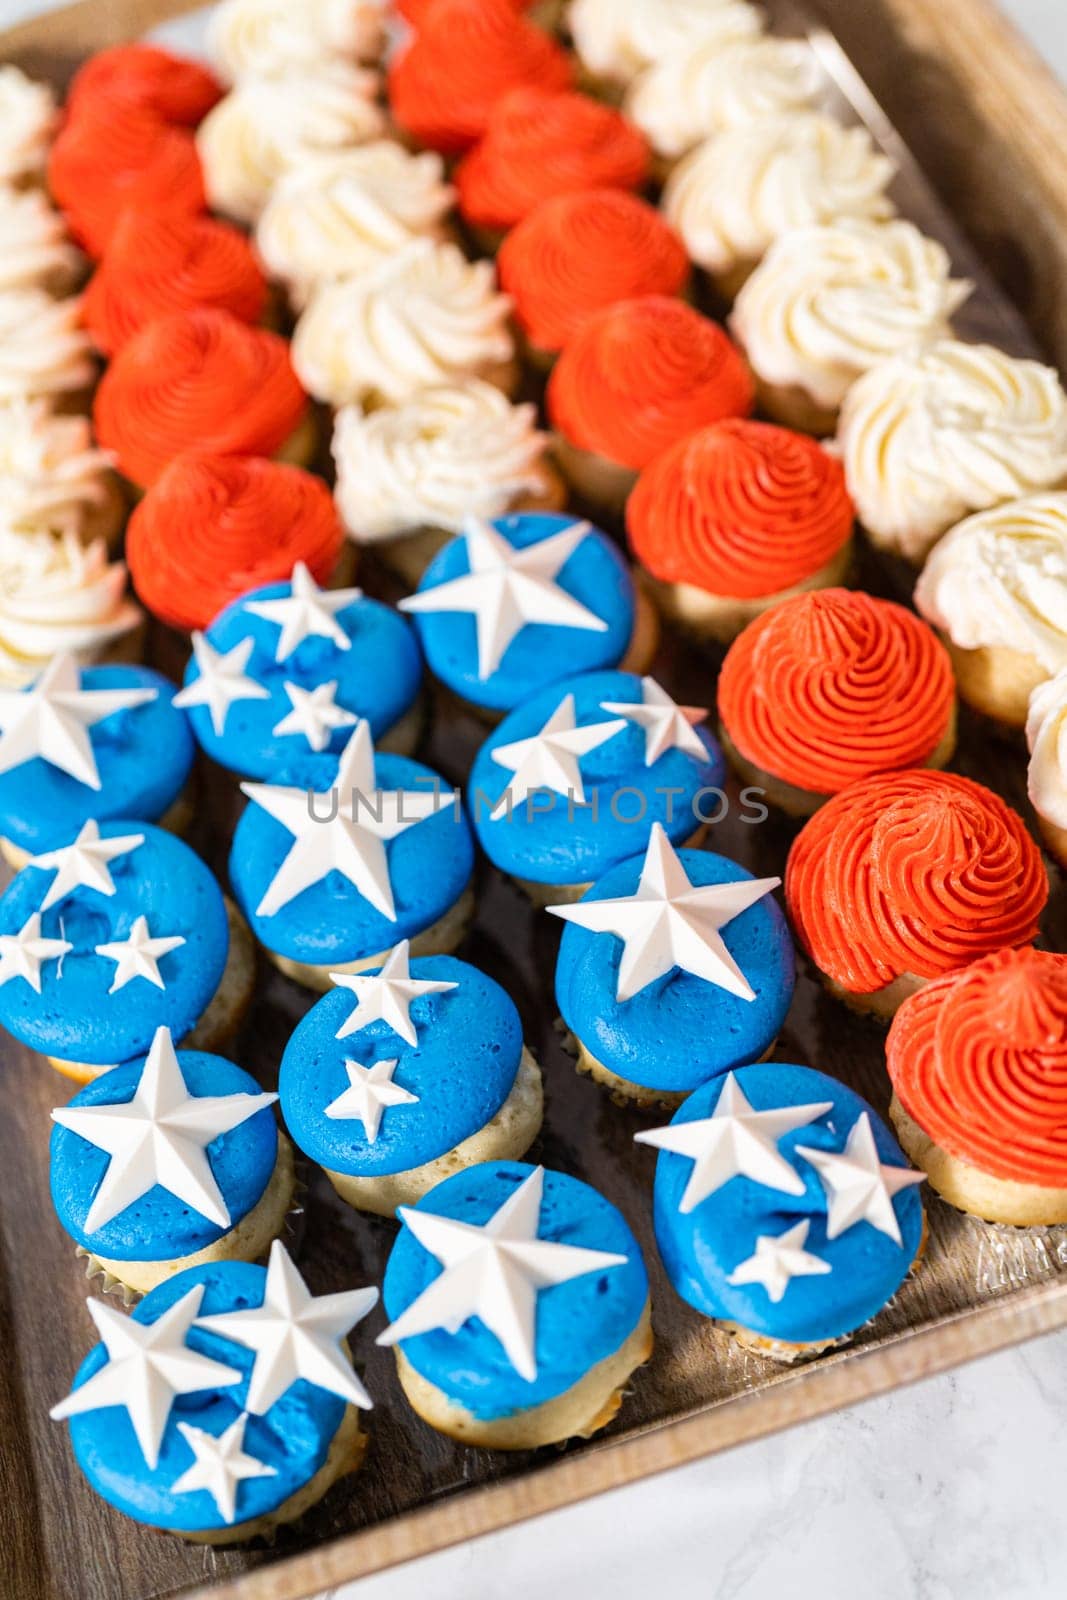 American Flag Mini Cupcakes by arinahabich